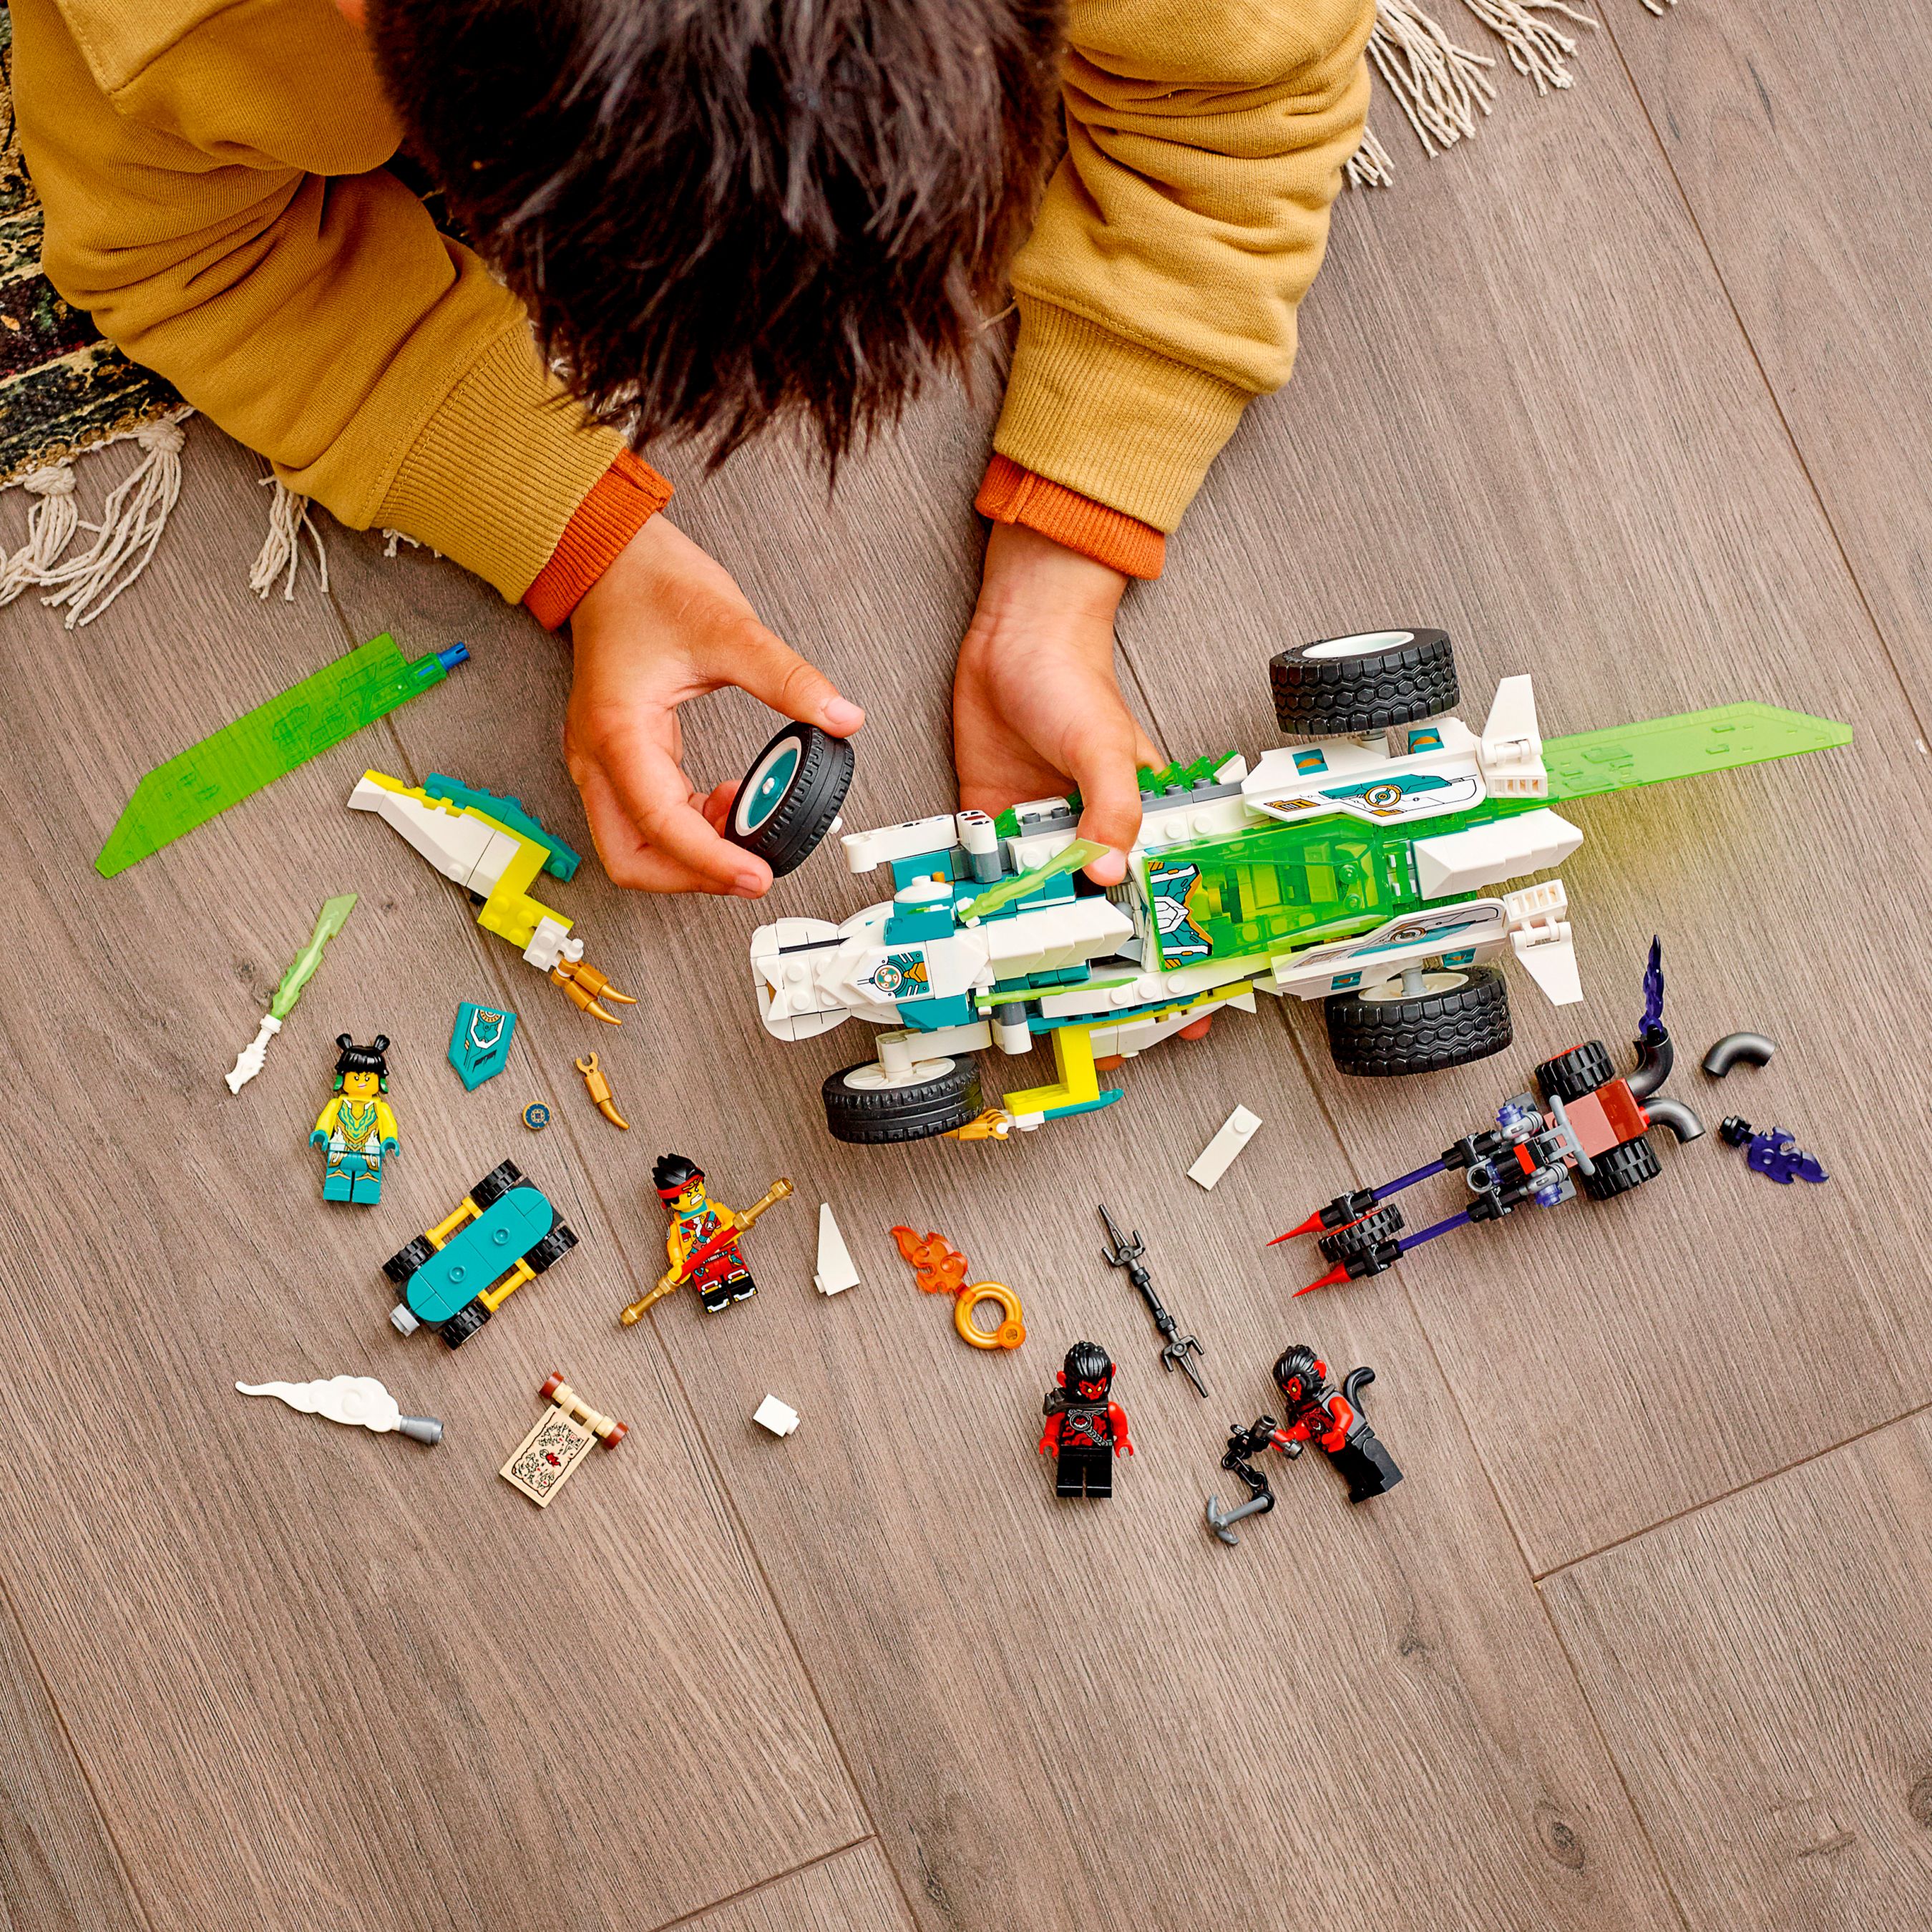 LEGO Monkie Kid 80031 Meis Drachenauto LEGO_80031_Lifestyle_build_crop.jpg